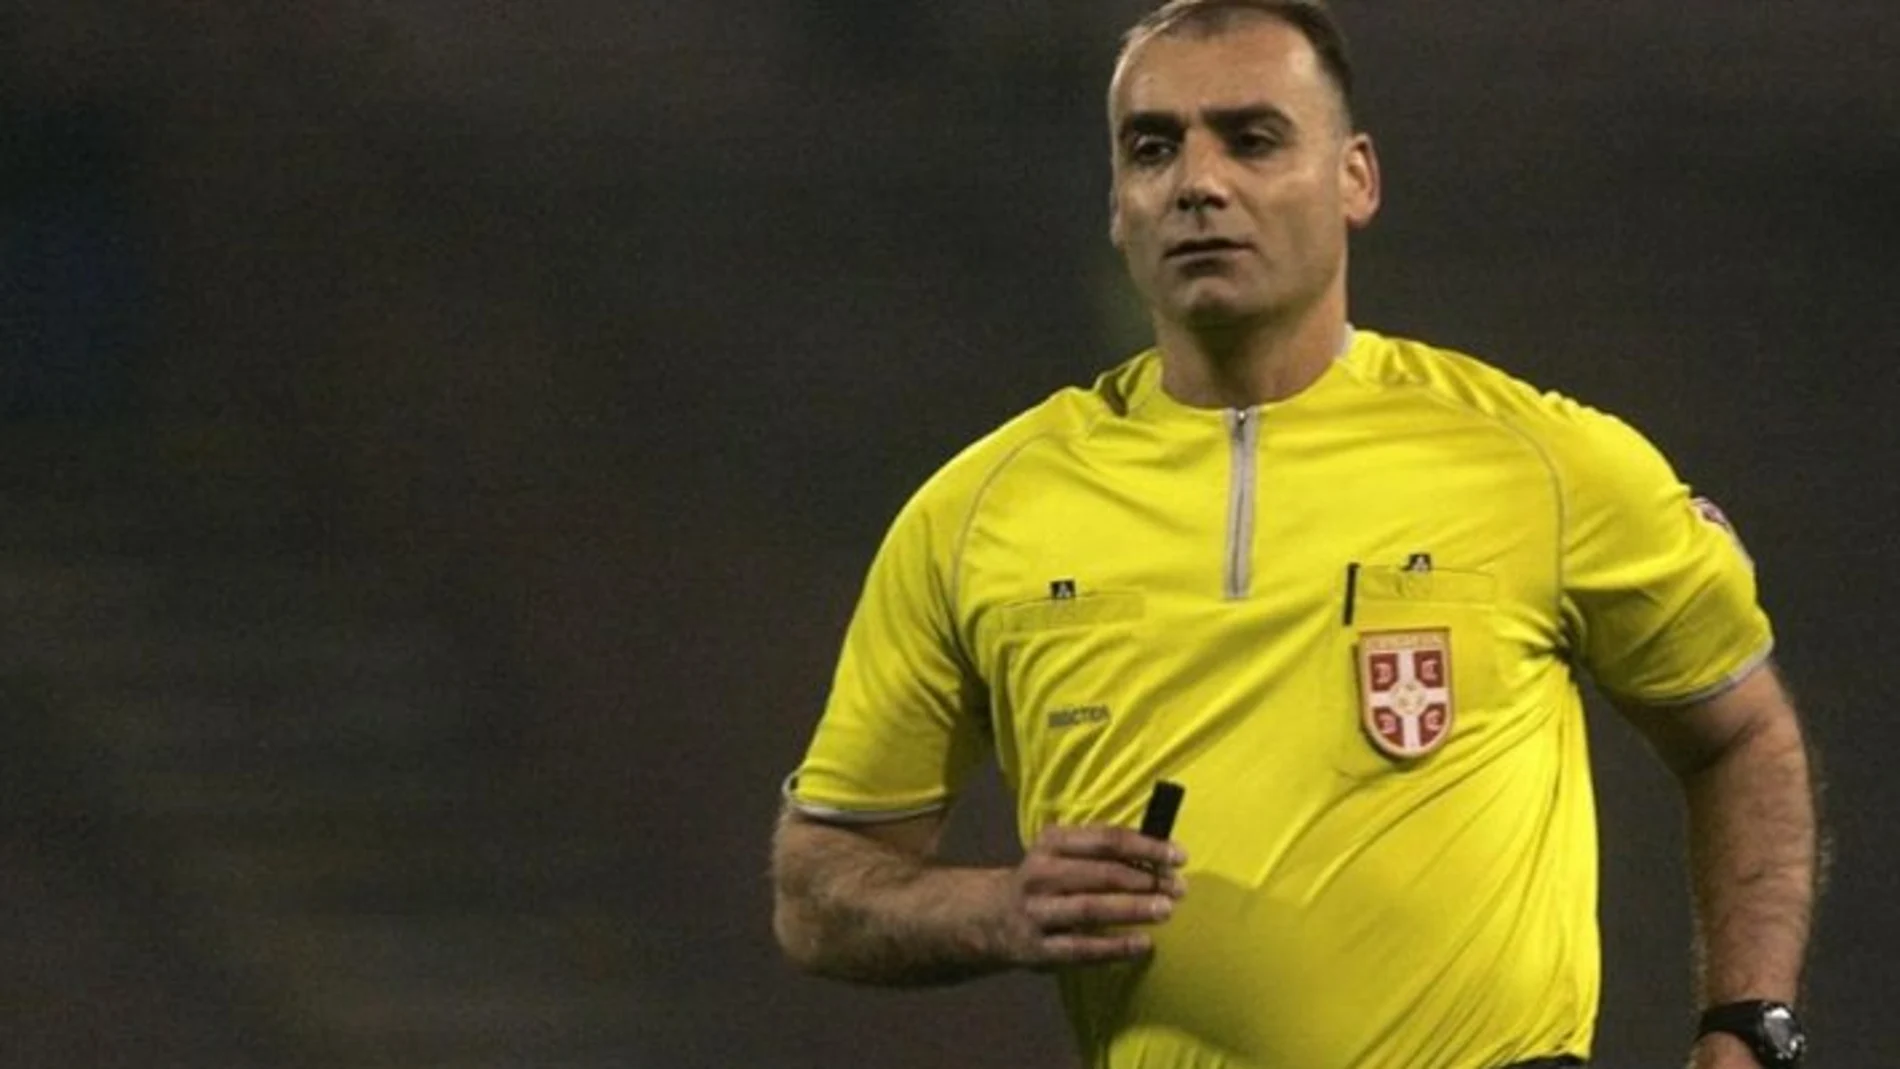 Condenan a un árbitro a 15 meses de cárcel por favorecer a un equipo en Serbia